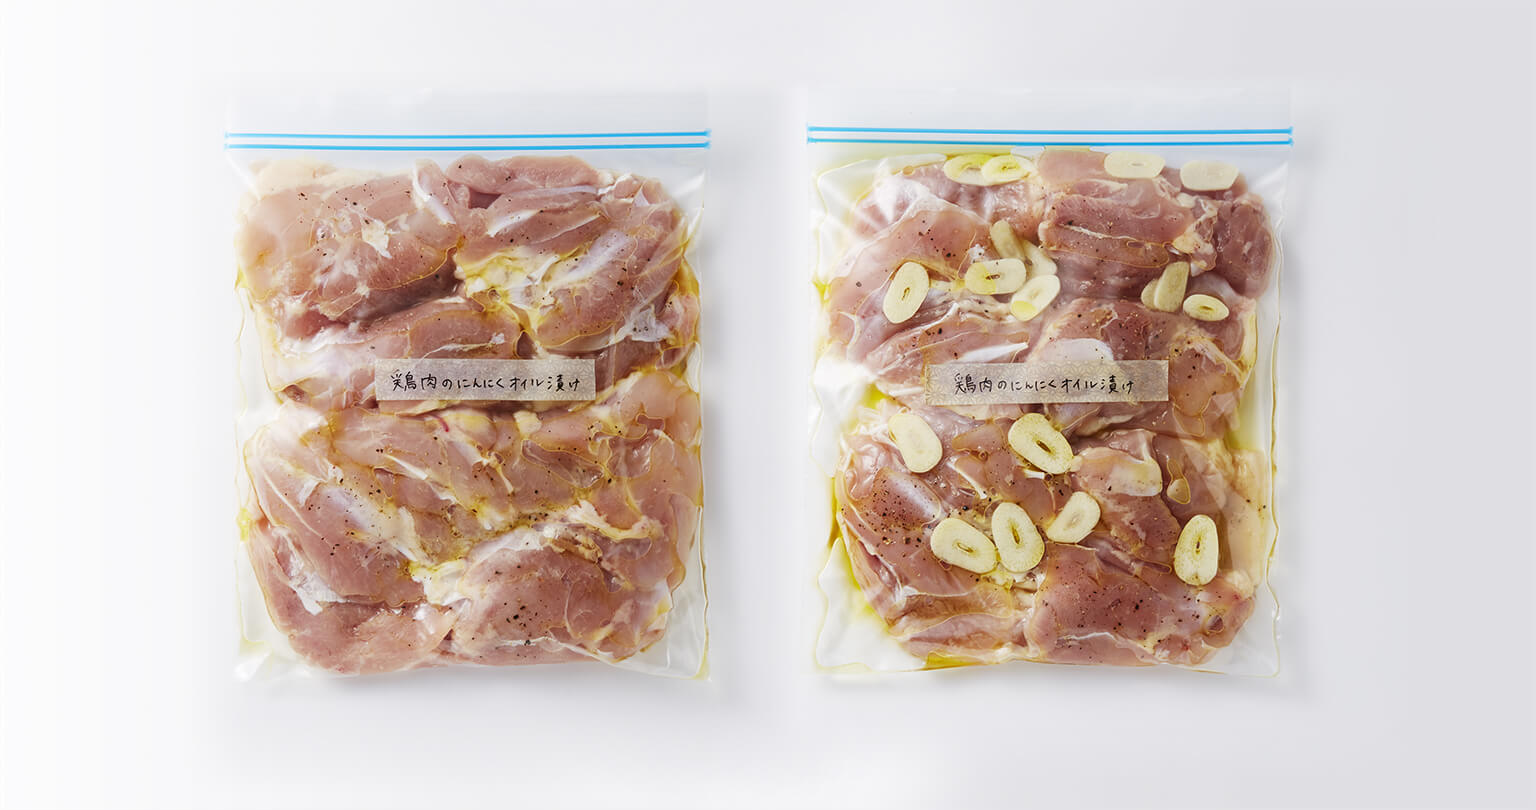 鶏肉のにんにくオイル漬け 冷凍つくり置きレシピ集 メガフリーザー超 活用術 冷蔵庫 シャープ